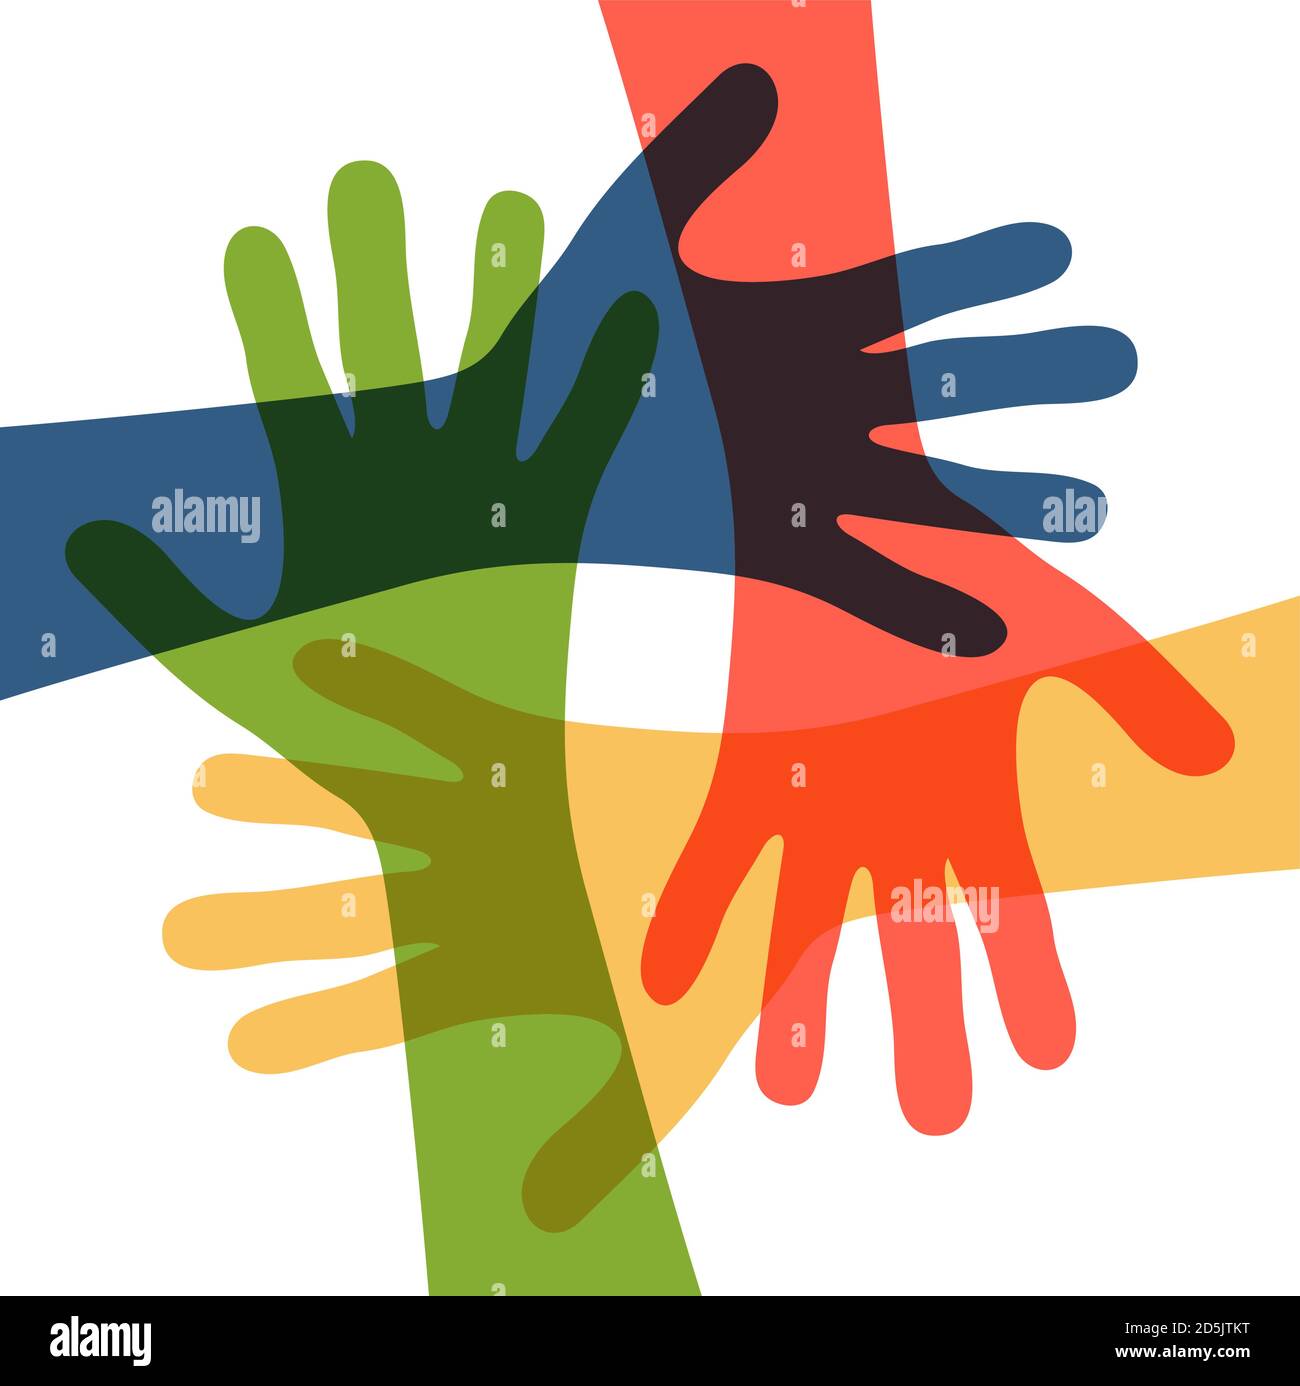 EPS 10 Vektor-Illustration von vier verschiedenen farbigen Menschen strecken ihre Hände symbolisieren Zusammenarbeit oder Vielfalt Freundschaft Stock Vektor